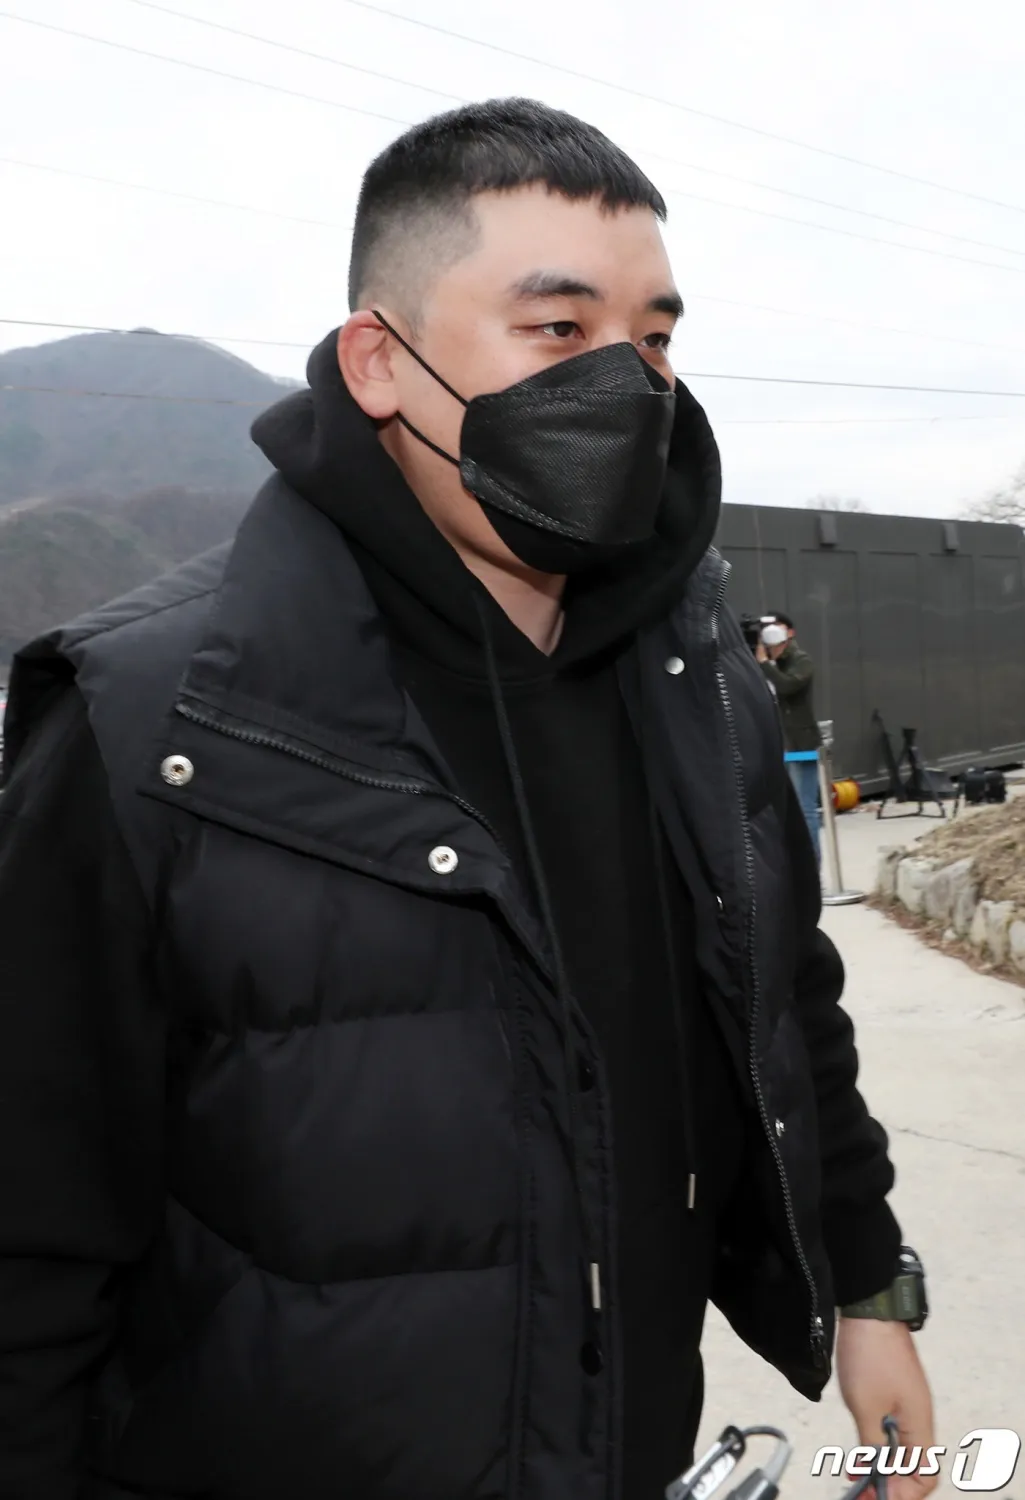 Seungri attire la critique pour avoir « léché » le nom de BIGBANG lors de sa dernière apparition